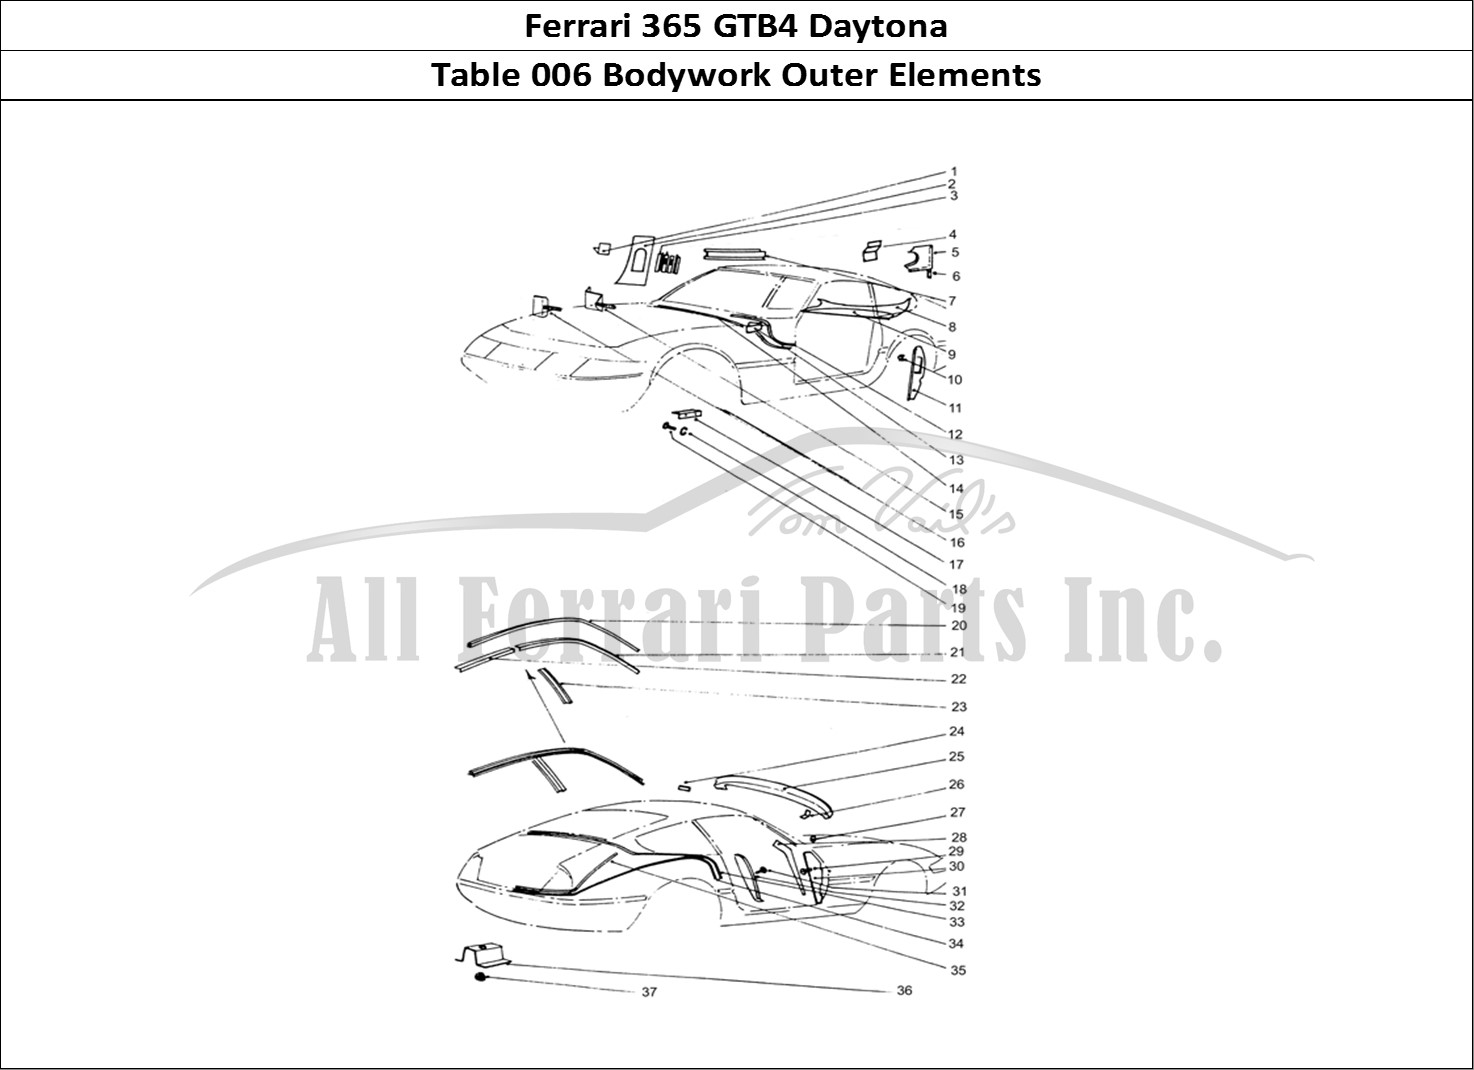 Ferrari Parts Ferrari 365 GTB4 Daytona (Coachwork) Page 006 Sheilds & Coverings